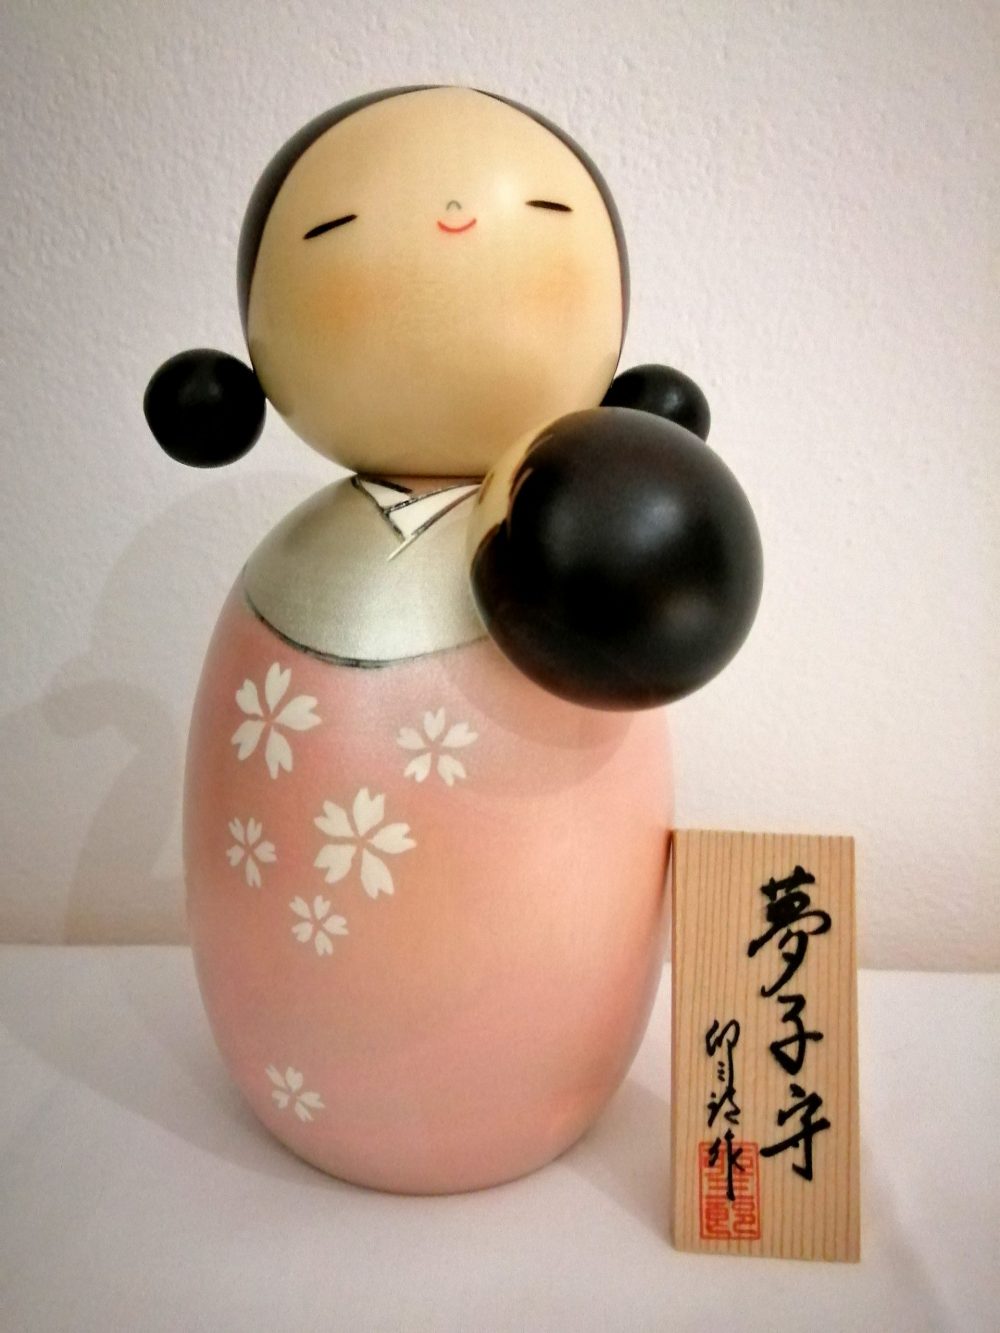 Kokeshi maternità, nome originale Yumekomori. Rappresenta una madre che culla il proprio bambino per farlo dormire in modo sereno e felice, dipinta a mano su legno.